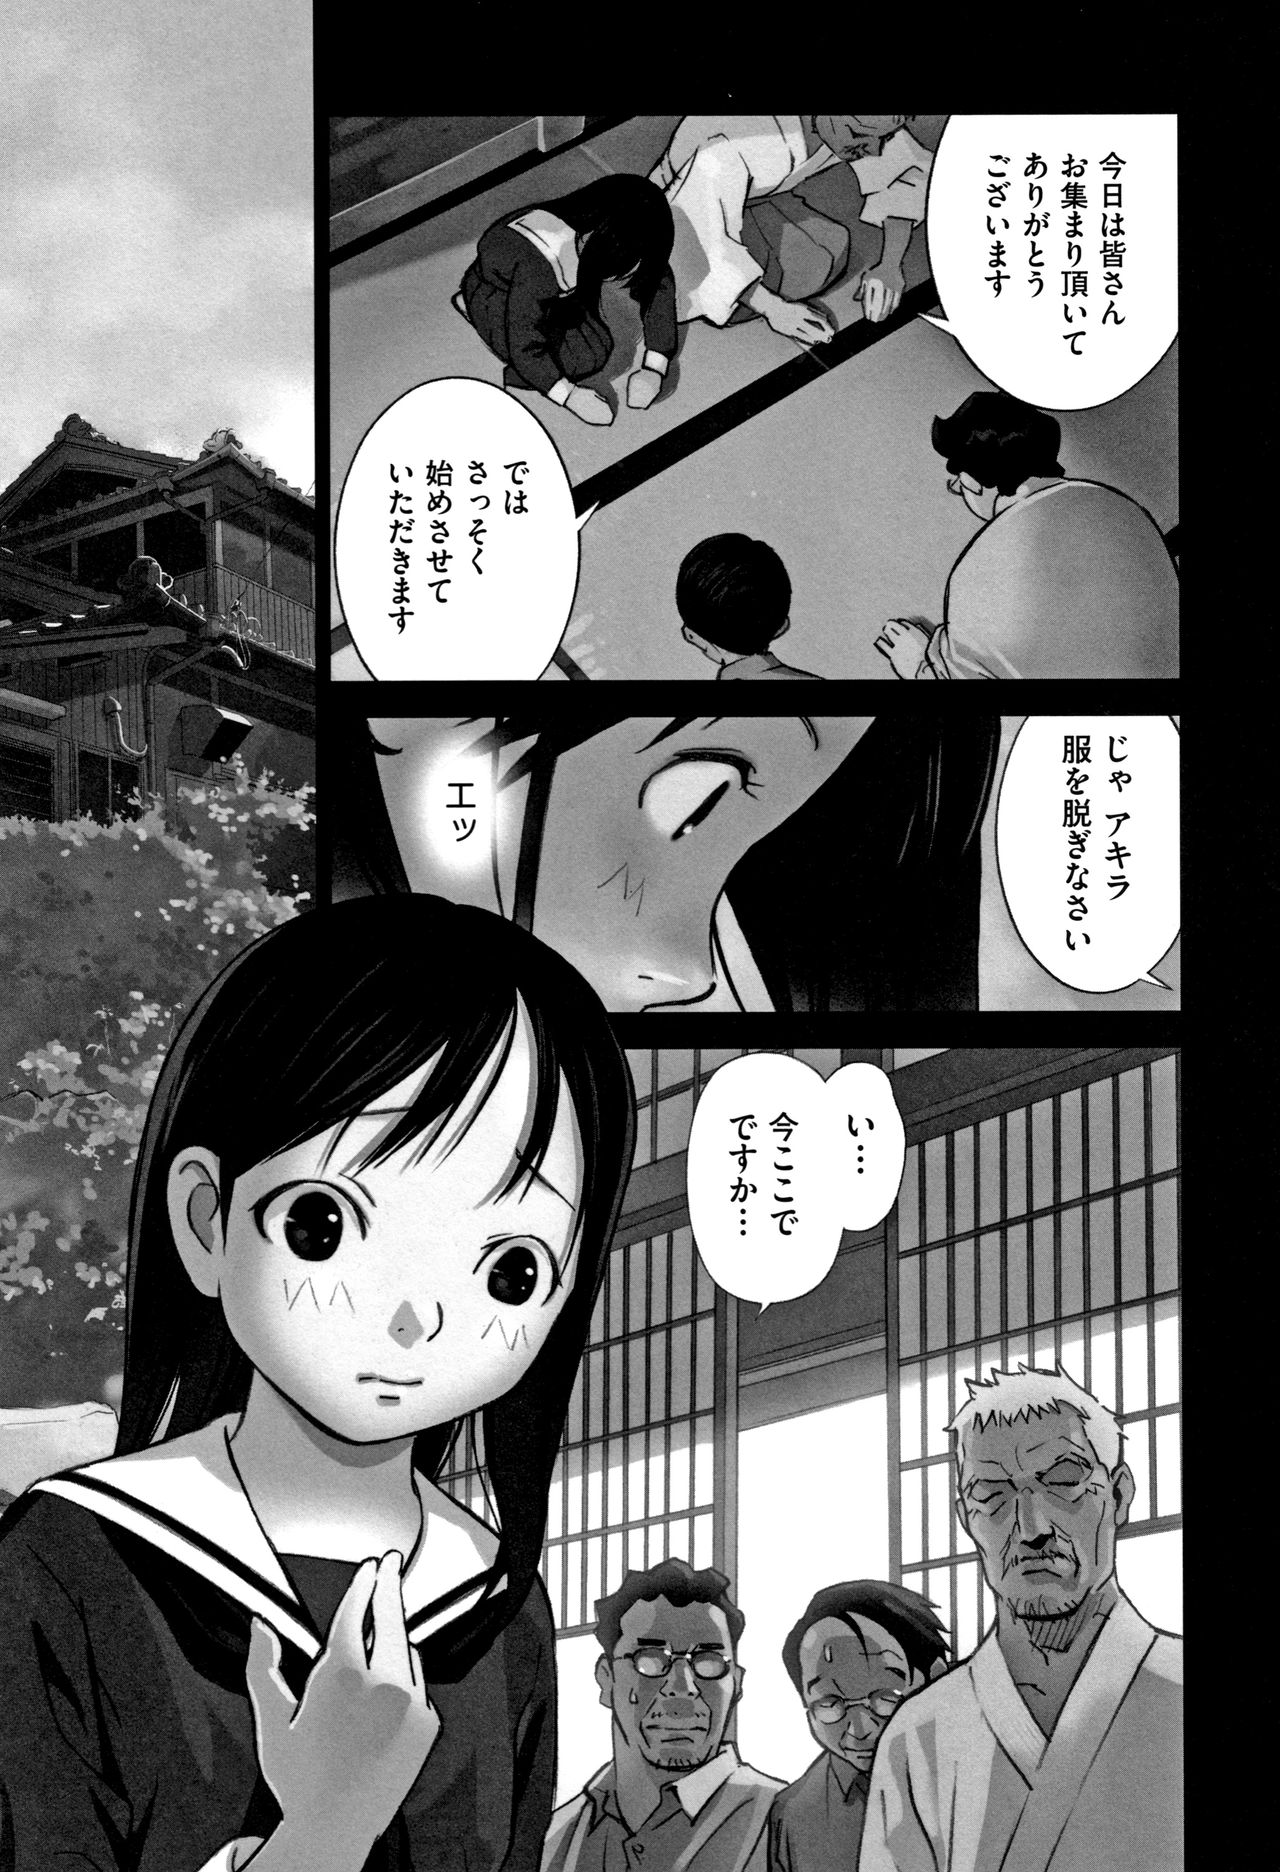 Hanainu Otokonoko wa Soko no Kouzou ga Shiritai noda page 156 full.